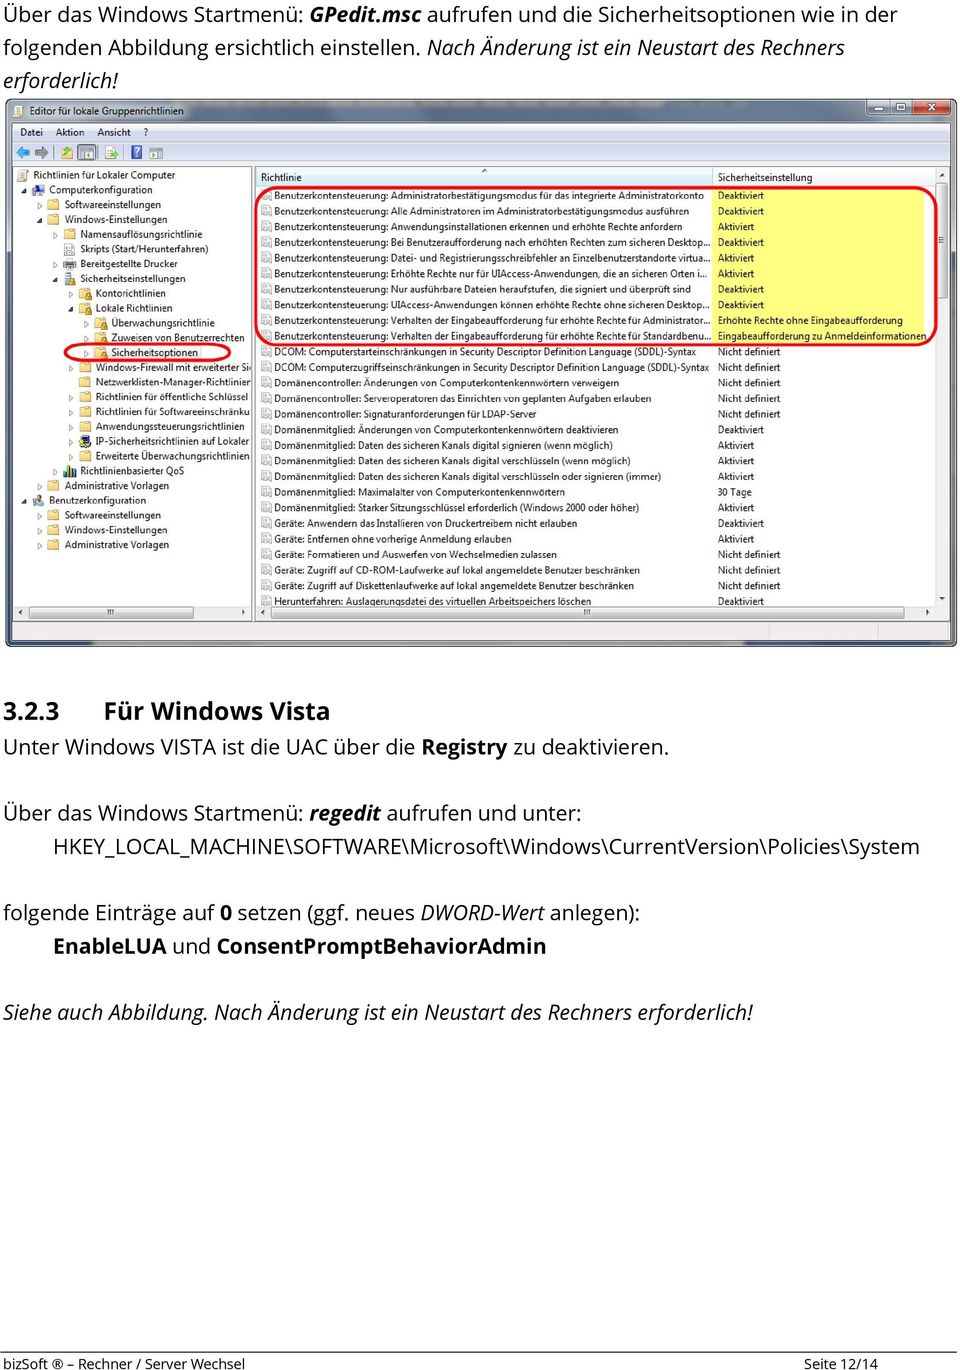 Über das Windows Startmenü: regedit aufrufen und unter: HKEY_LOCAL_MACHINE\SOFTWARE\Microsoft\Windows\CurrentVersion\Policies\System folgende Einträge auf 0